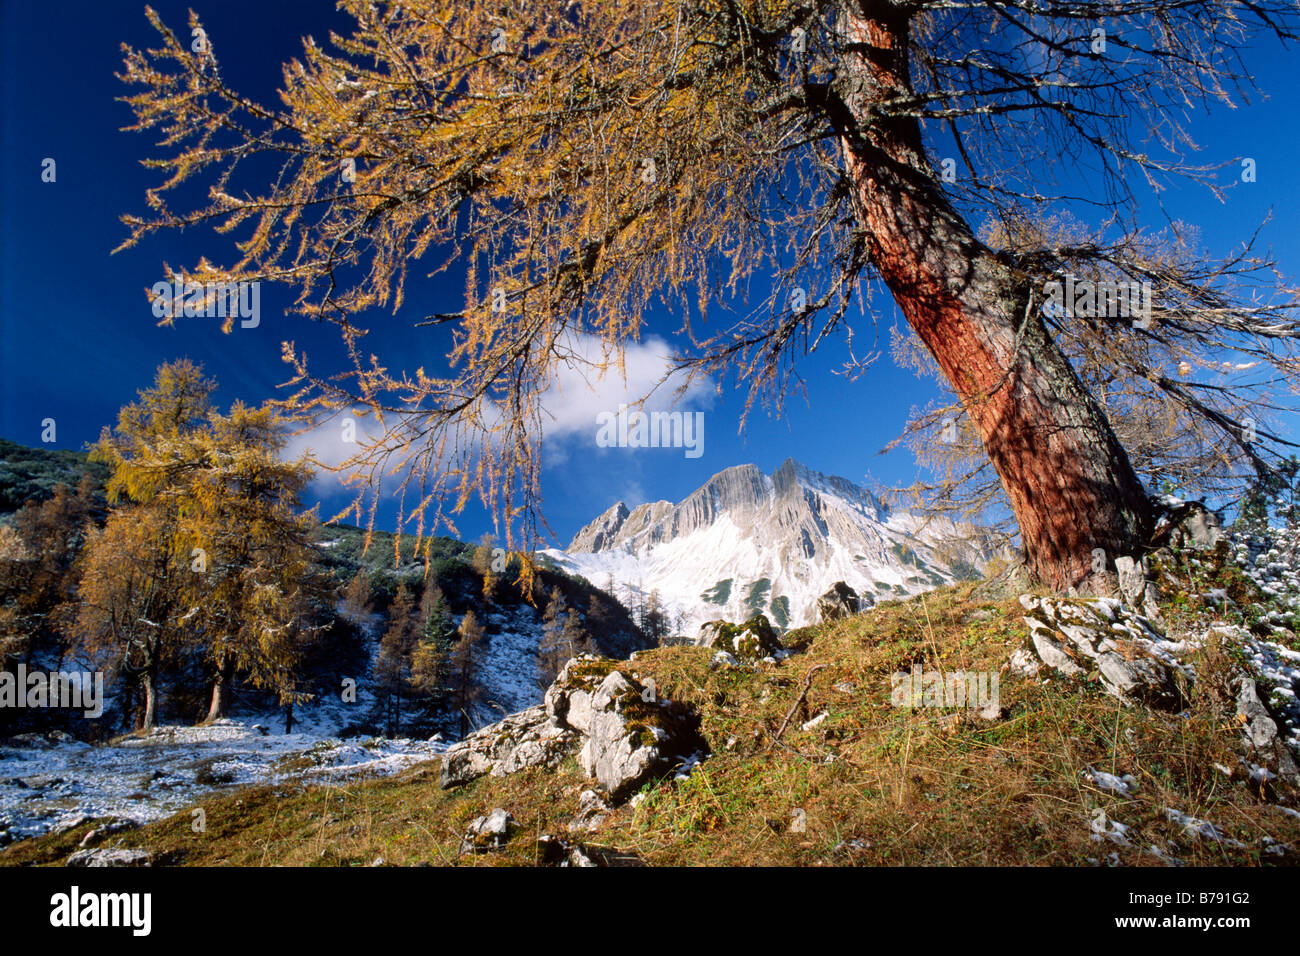 European larch (Larix decidua) in front of Mondschein peak in autumn, Karwendel Mountains, North Tyrol, Austria, Europe Stock Photo